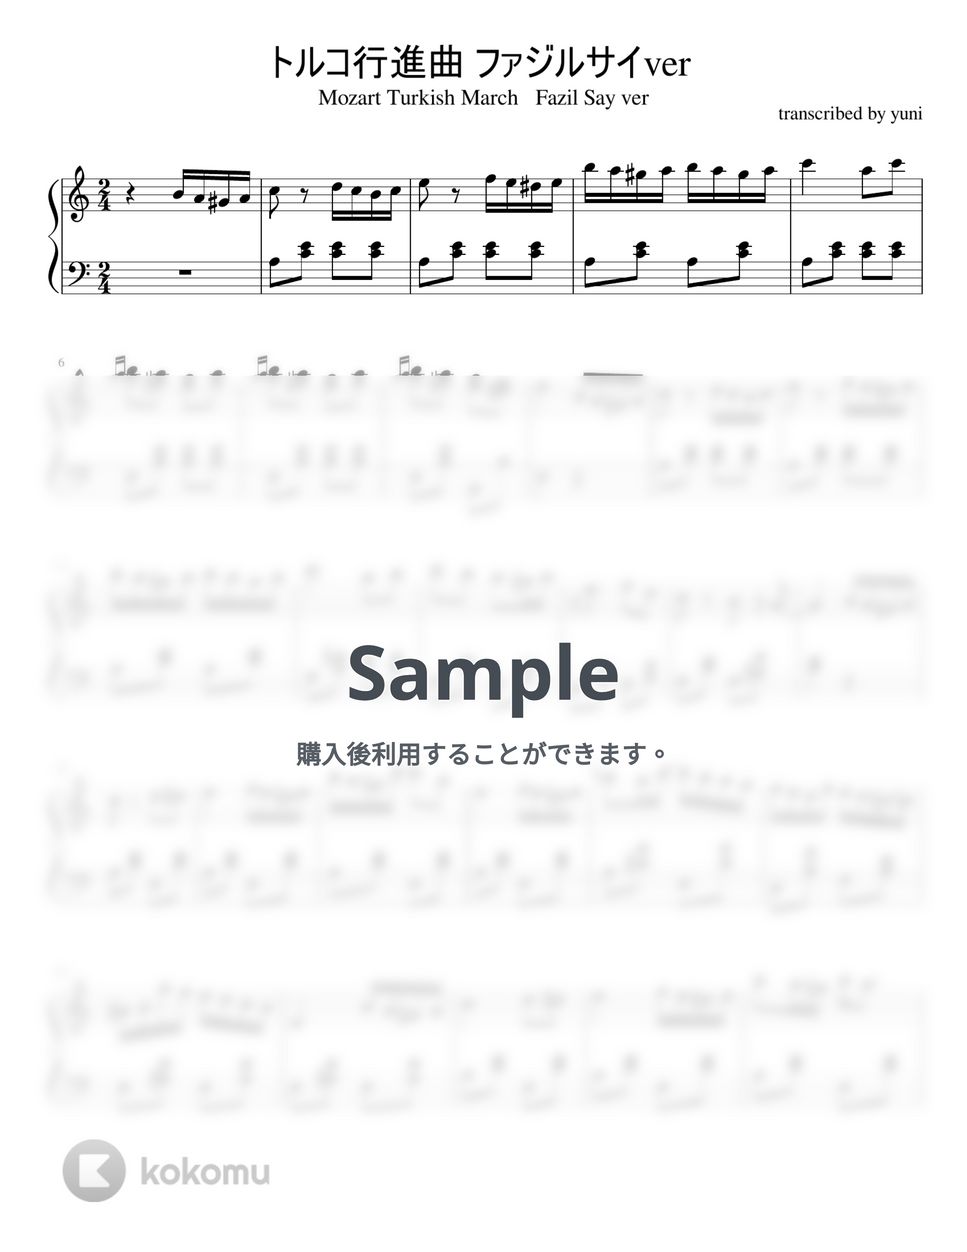 モーツァルト - トルコ行進曲 (piano solo/jazz ver) by yunipiano